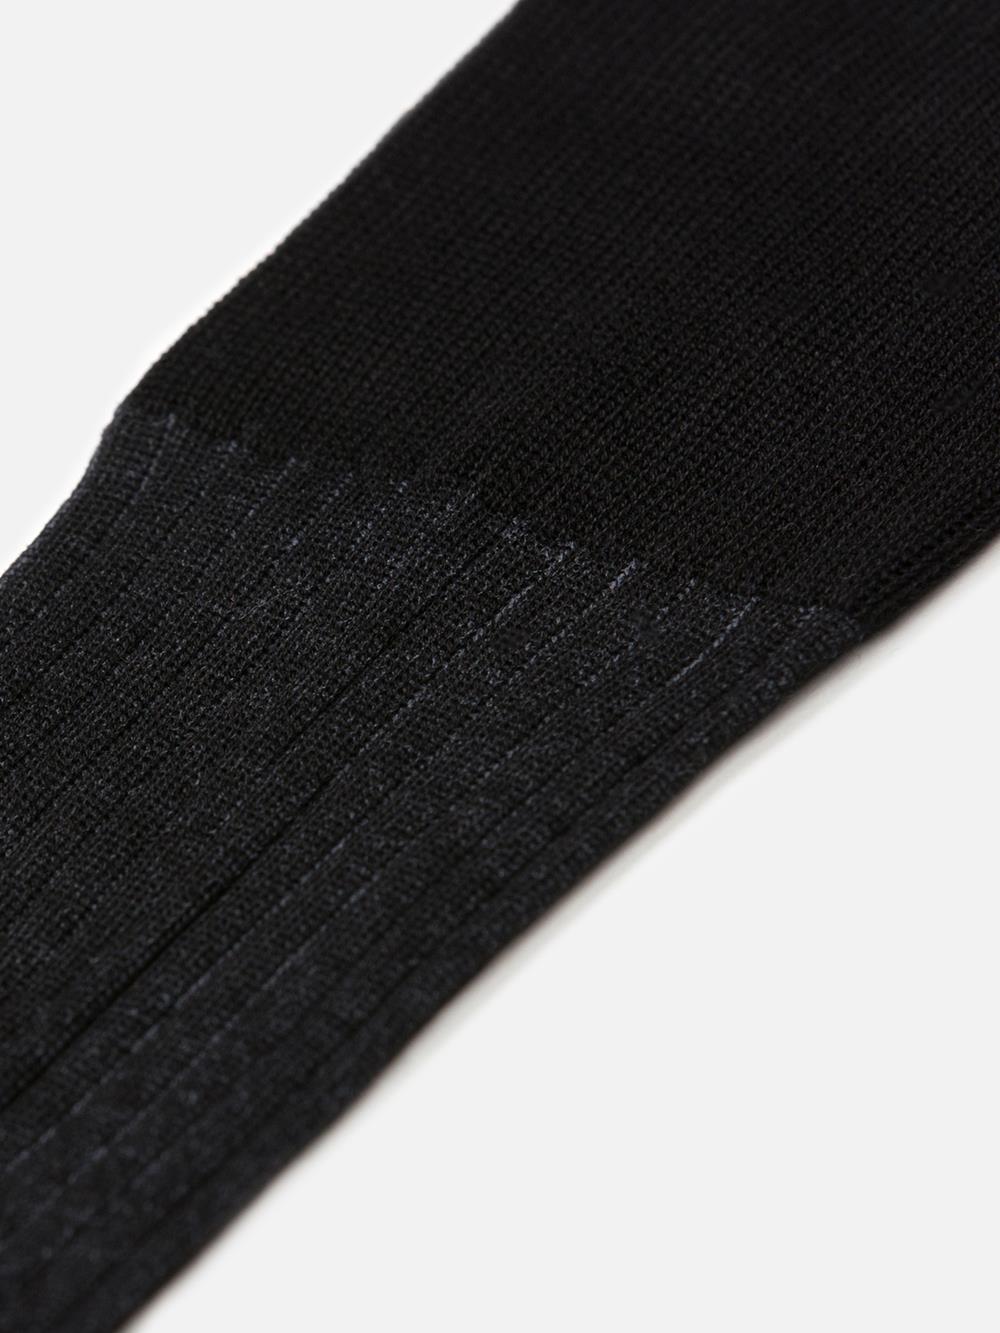 Vanished sokken in zwart ruitjes garen